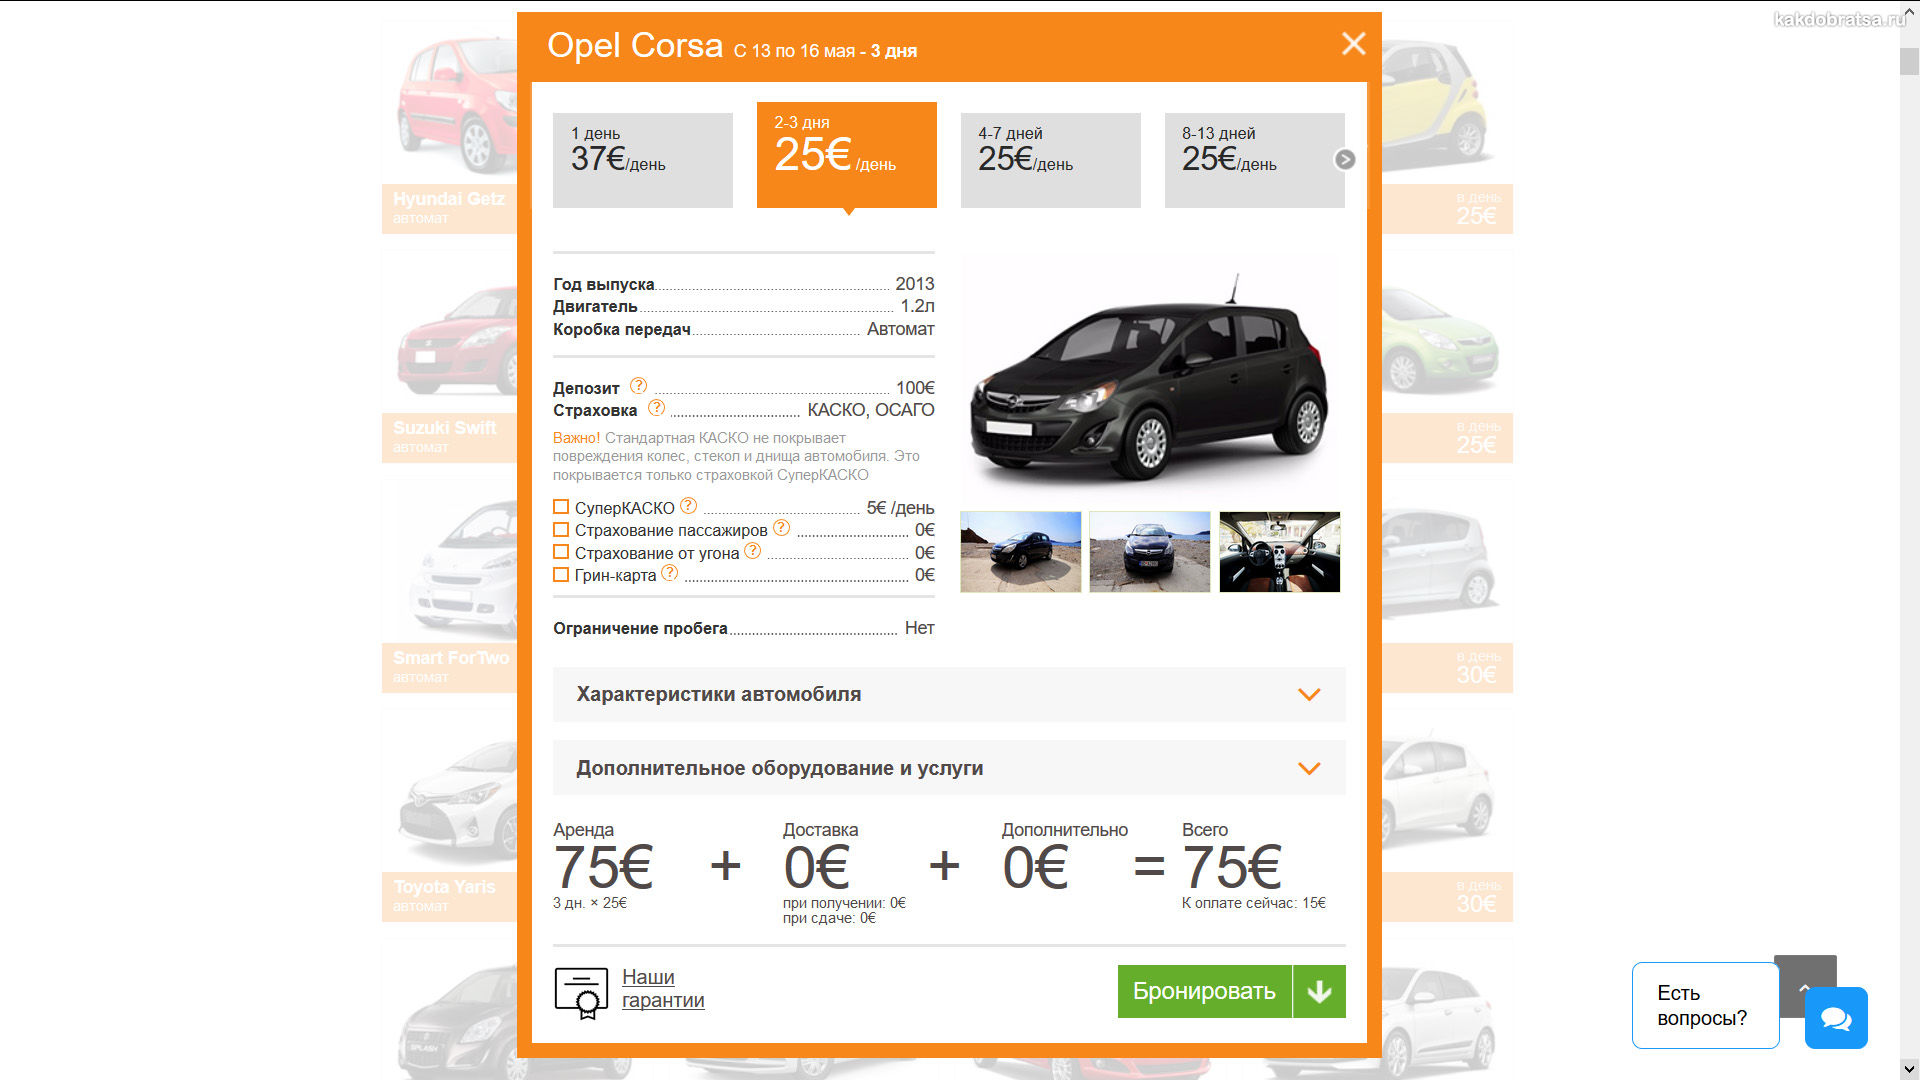 Opel Corsa аренда авто в Черногории личный опыт